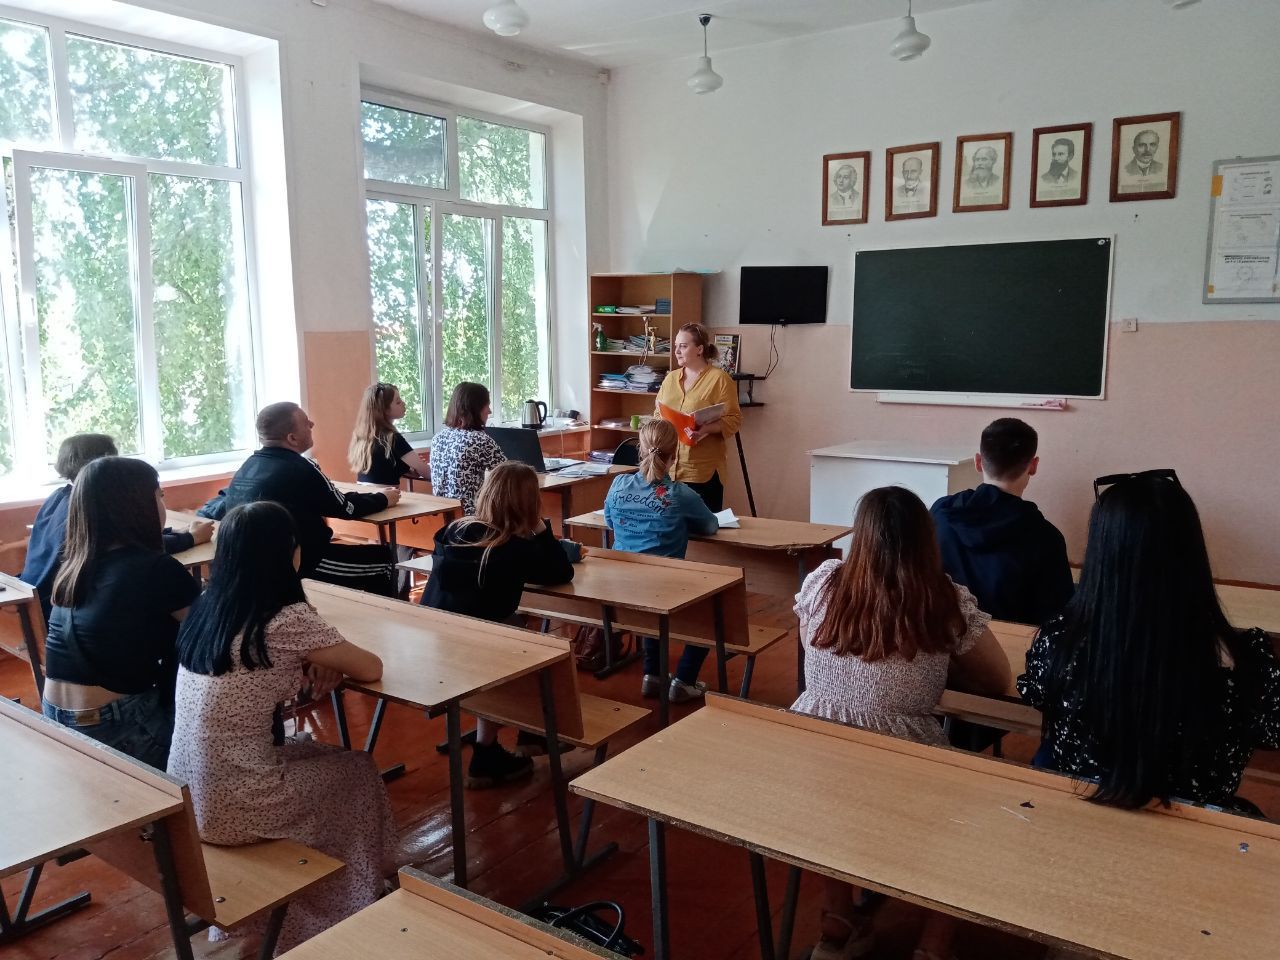 Наступило лето, занятия в школах закончились, но юристы Ульяновска продолжают проводить такие необходимые для подрастающего поколения уроки права